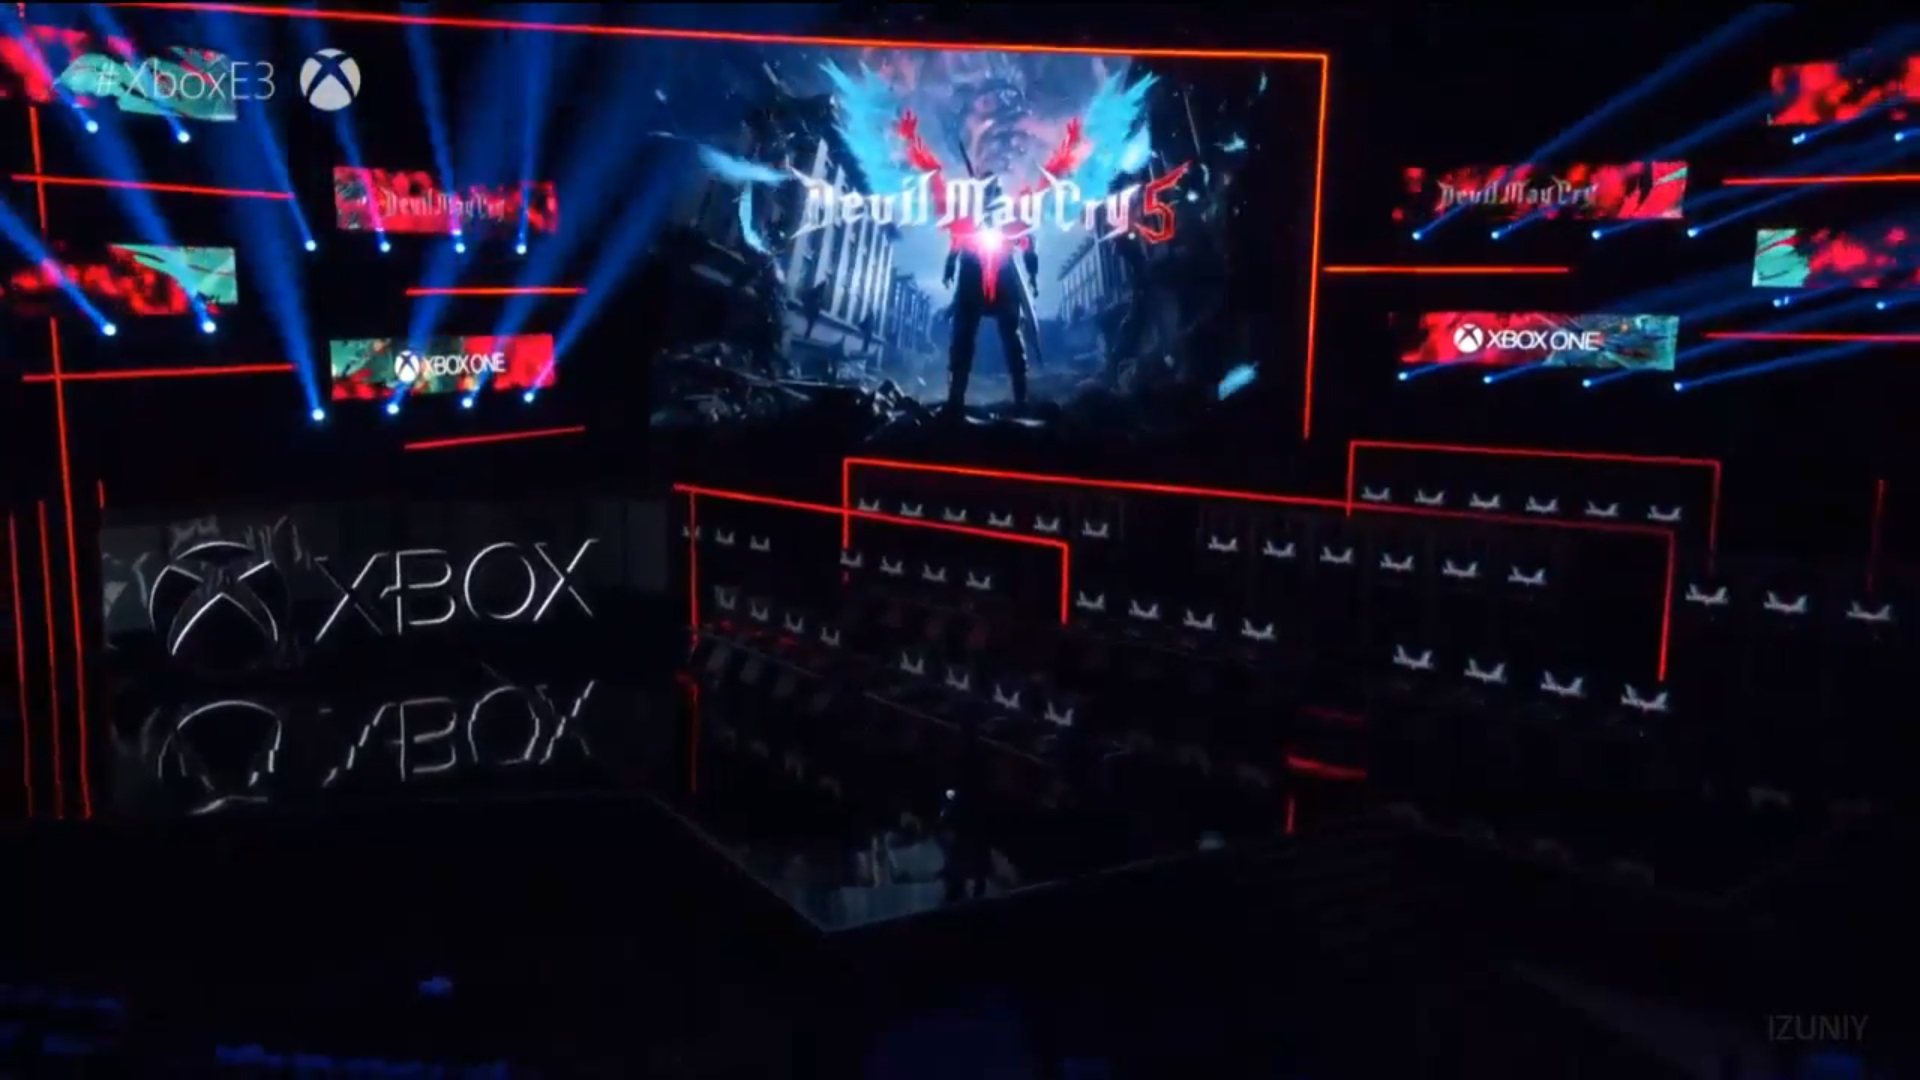 Xbox sunumunda Devil May Cry 5 oyun içi görüntüleri gösterildi